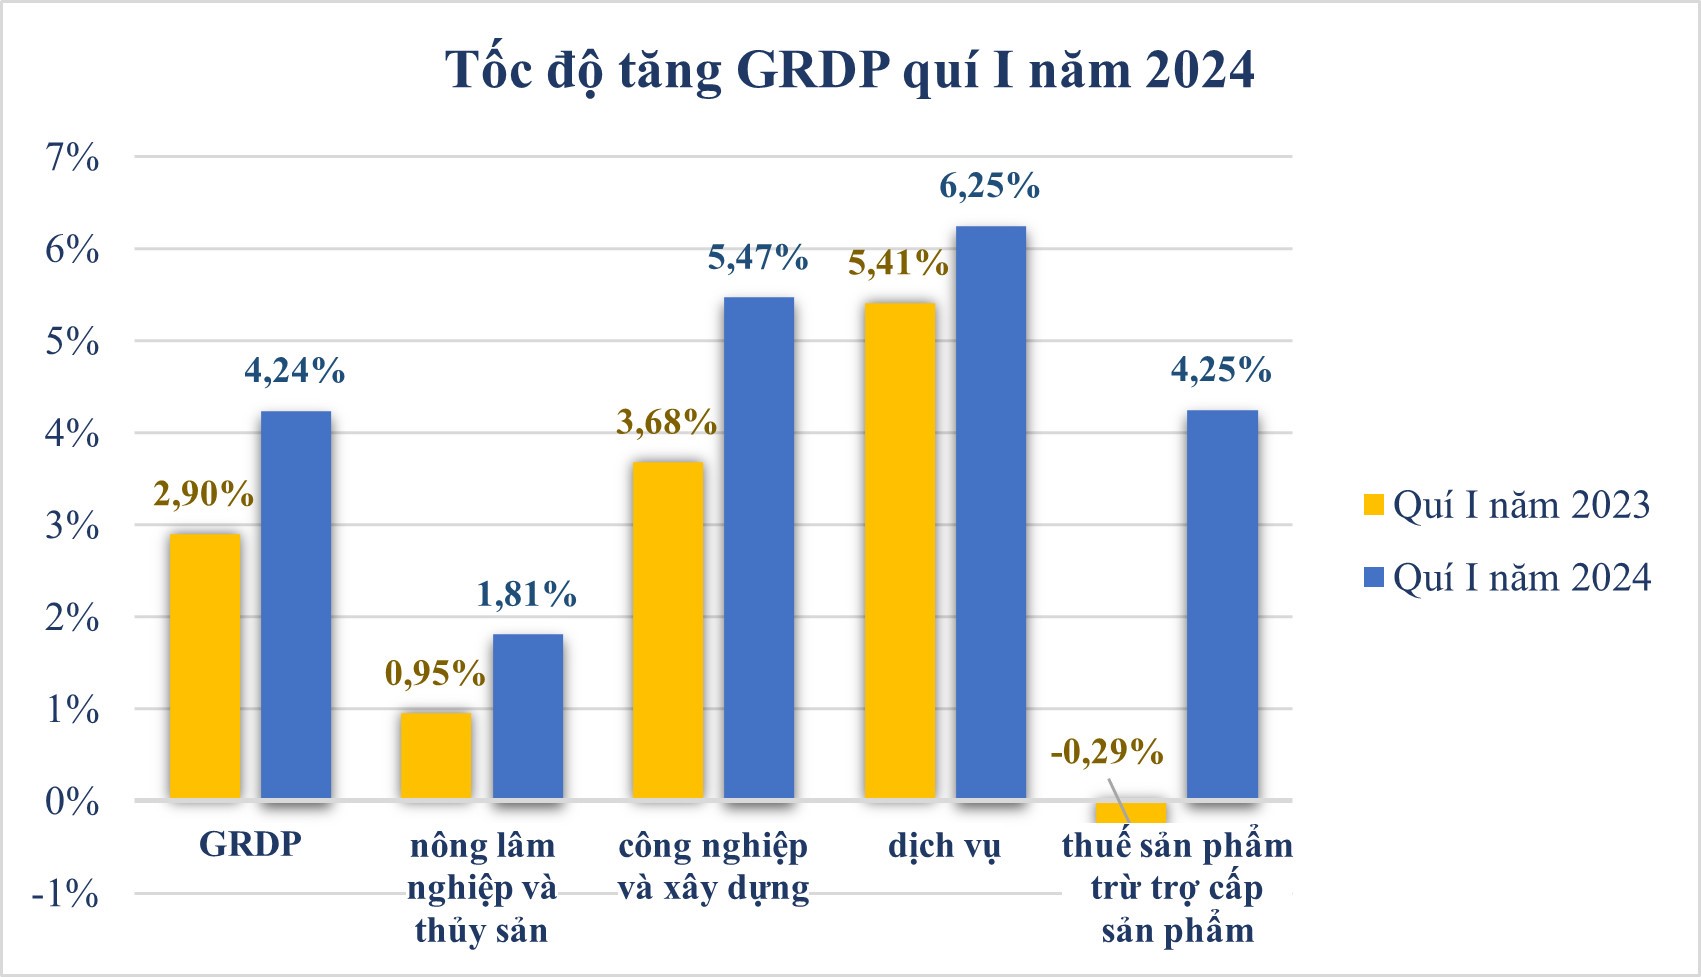 Tổng sản phẩm trên địa bàn quí I năm 2024 Tiền Giang đạt 4,24%